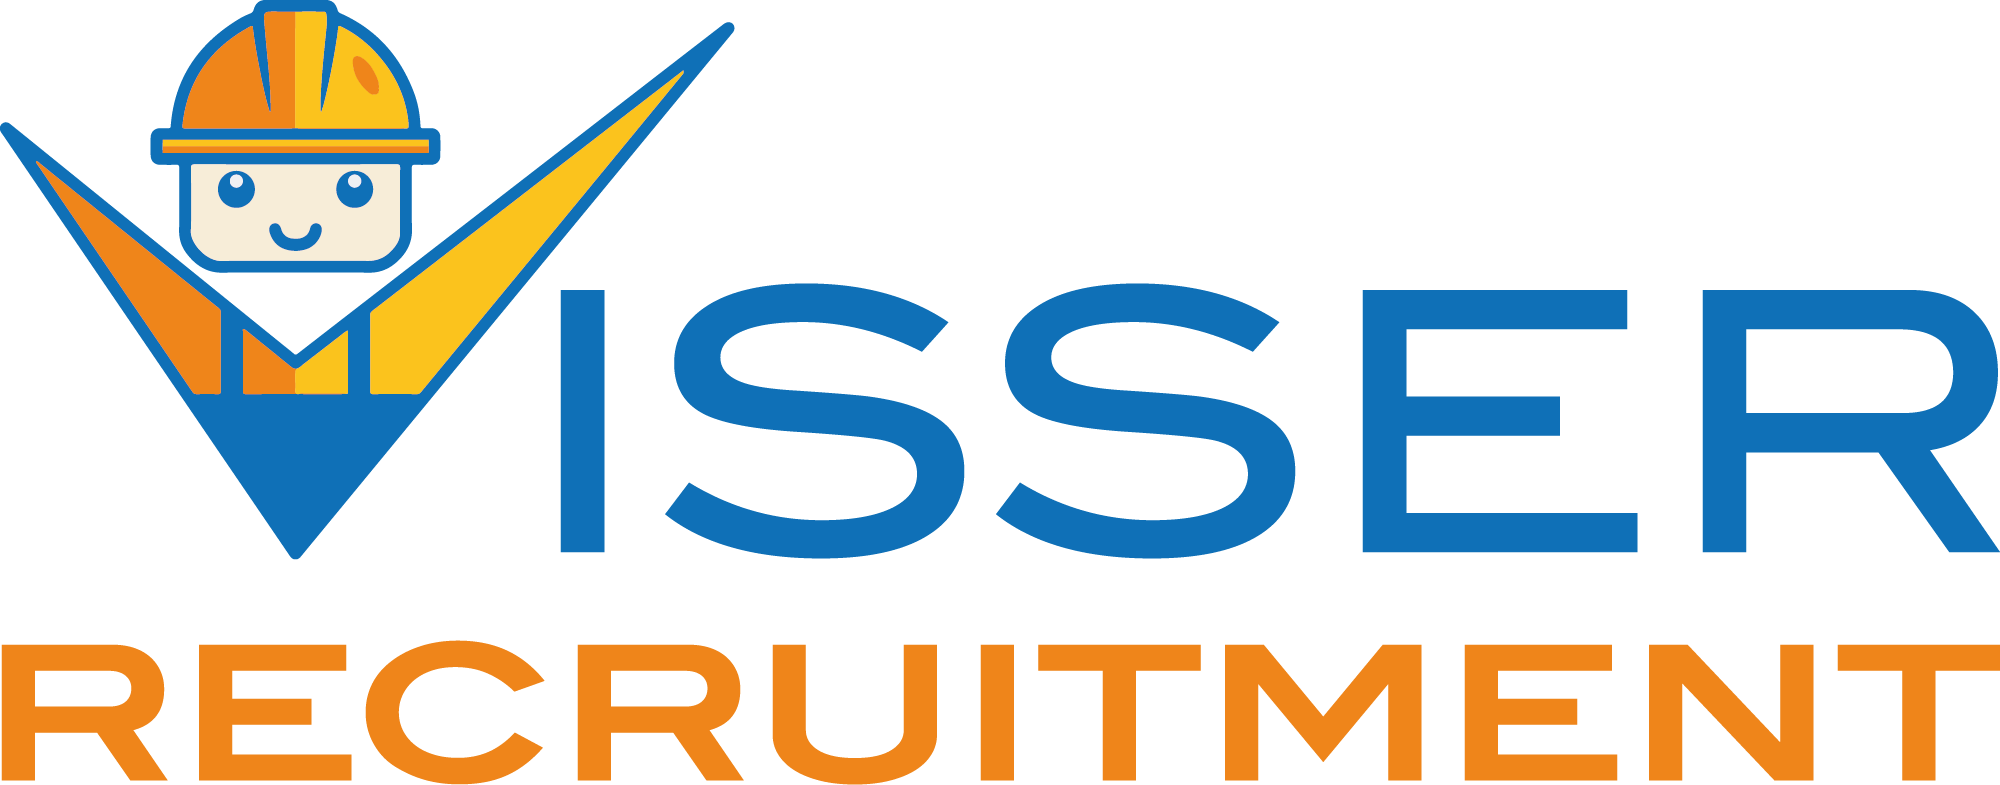 Logo-Visser-Recruitment